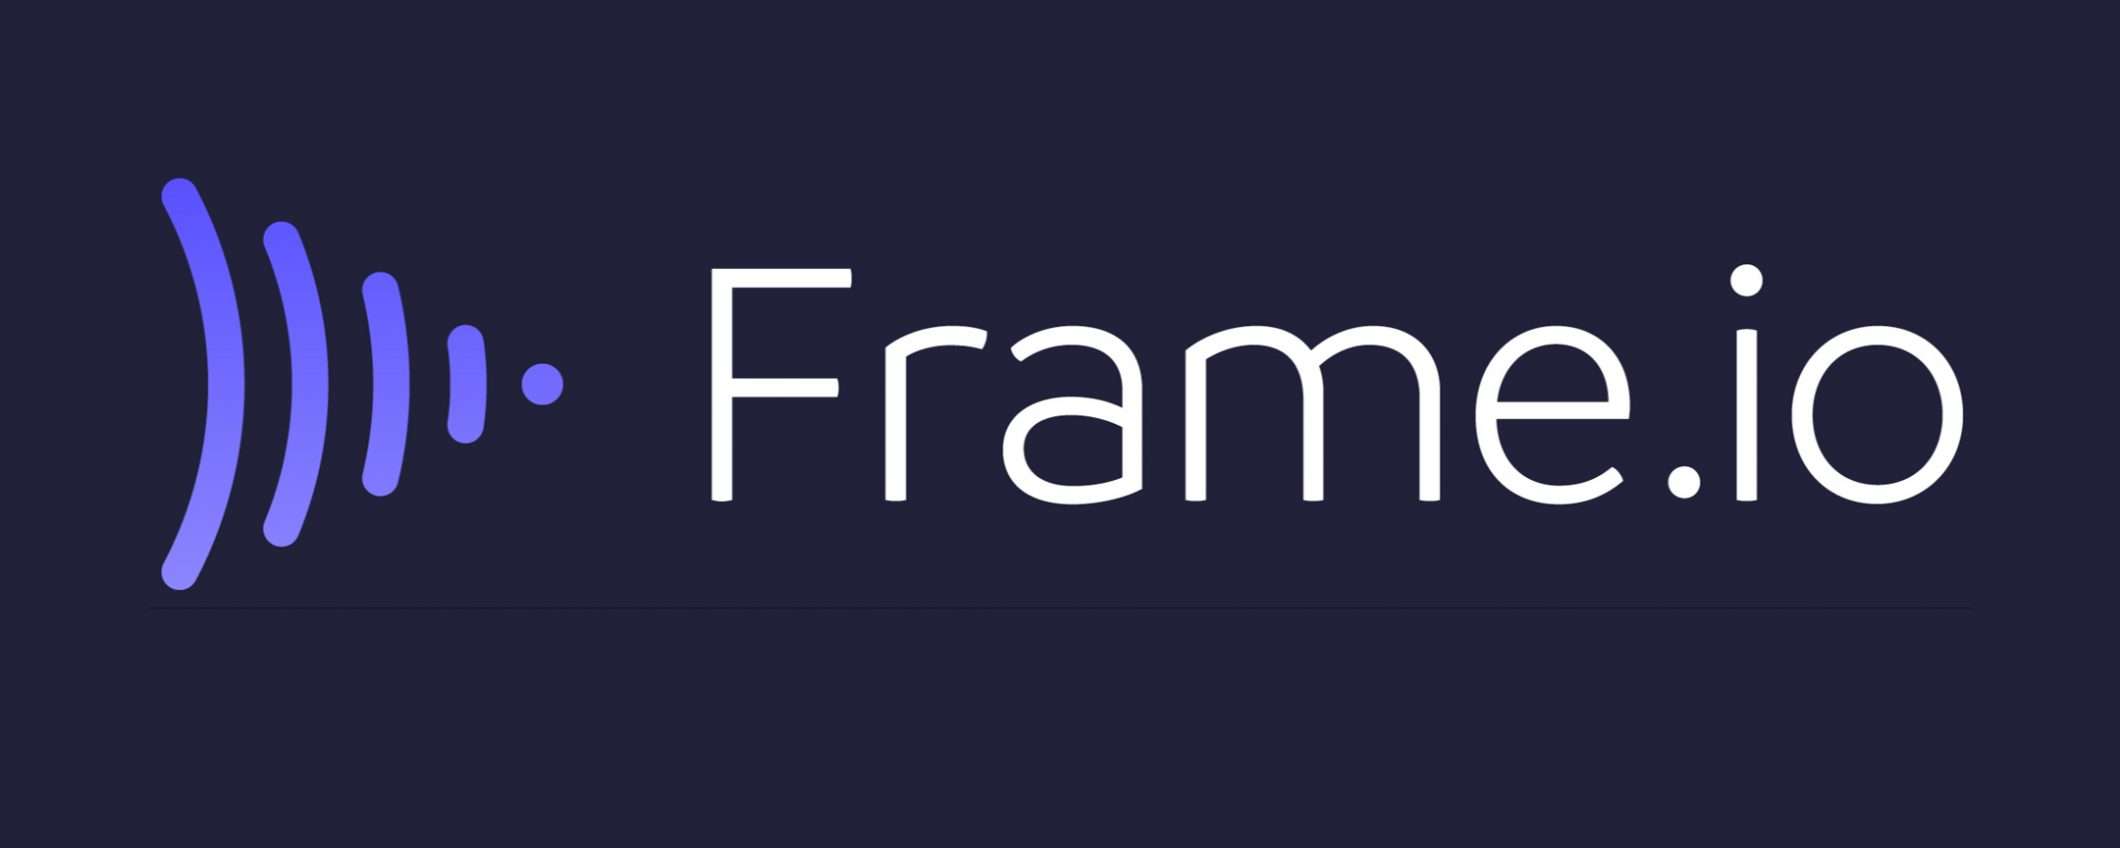 Adobe annuncia l'acquisizione di Frame.io